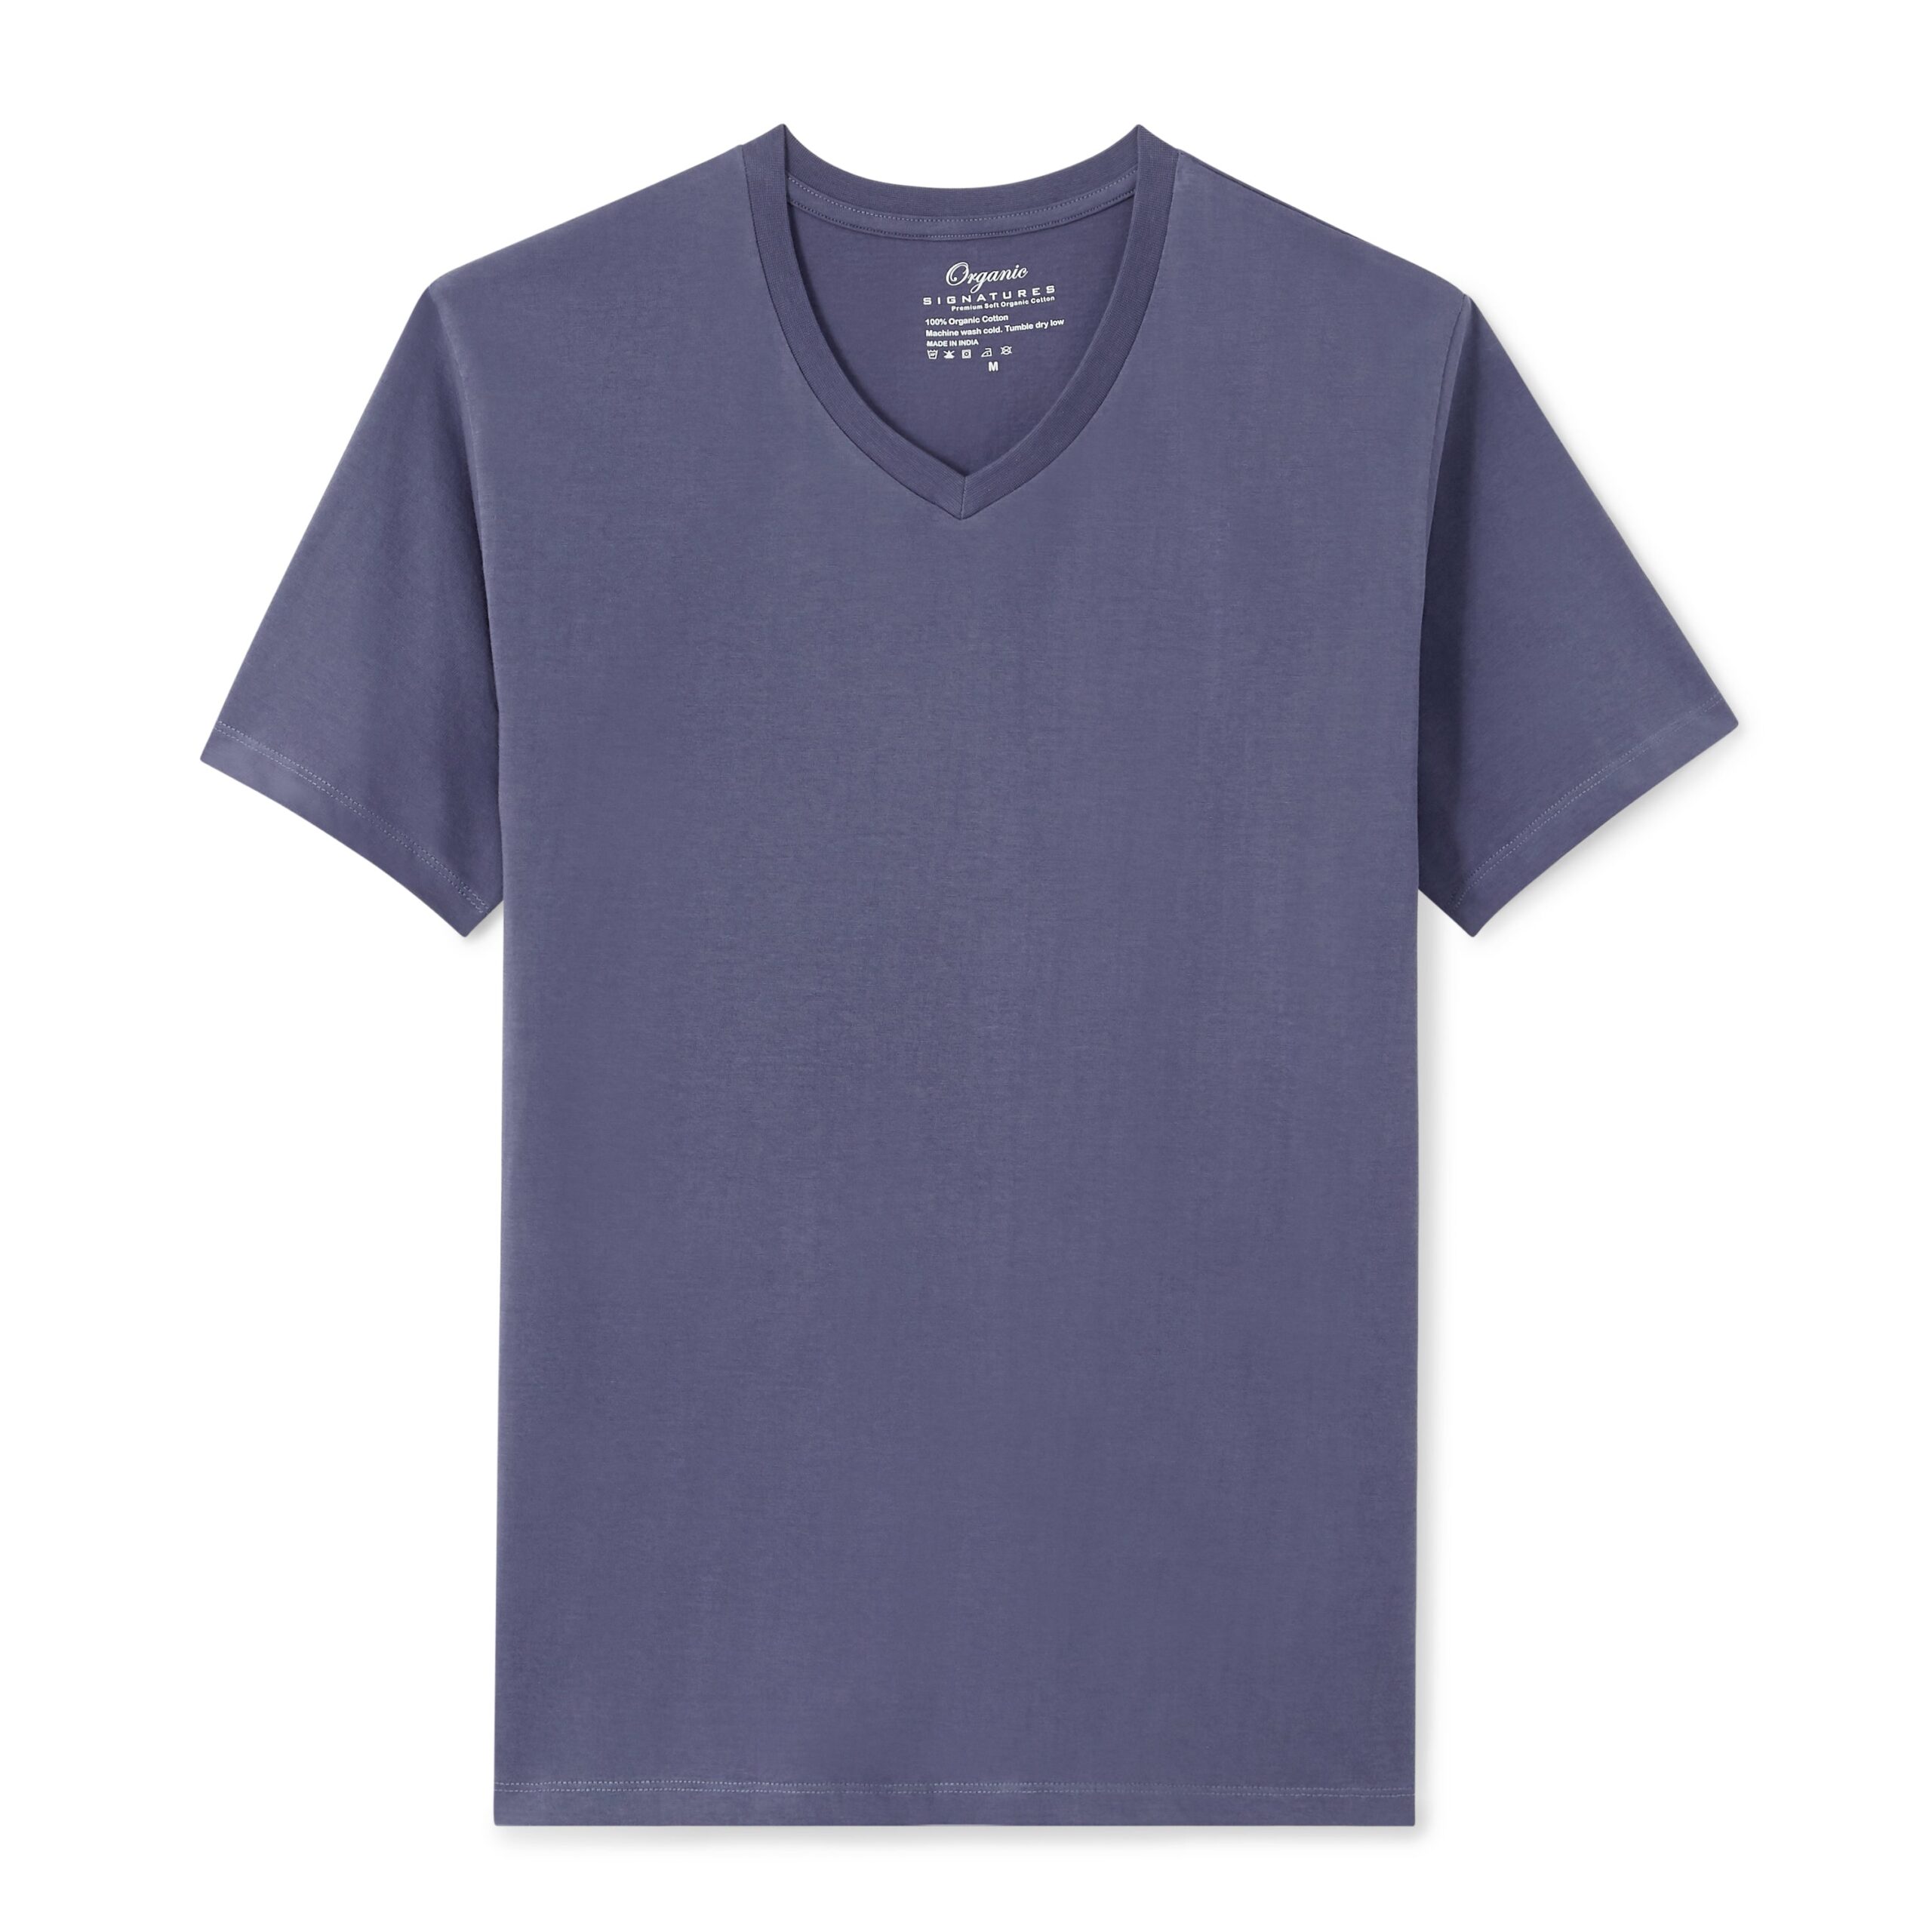 Blue T-Shirt for Men &#8211; V-Neck Short Sleeve